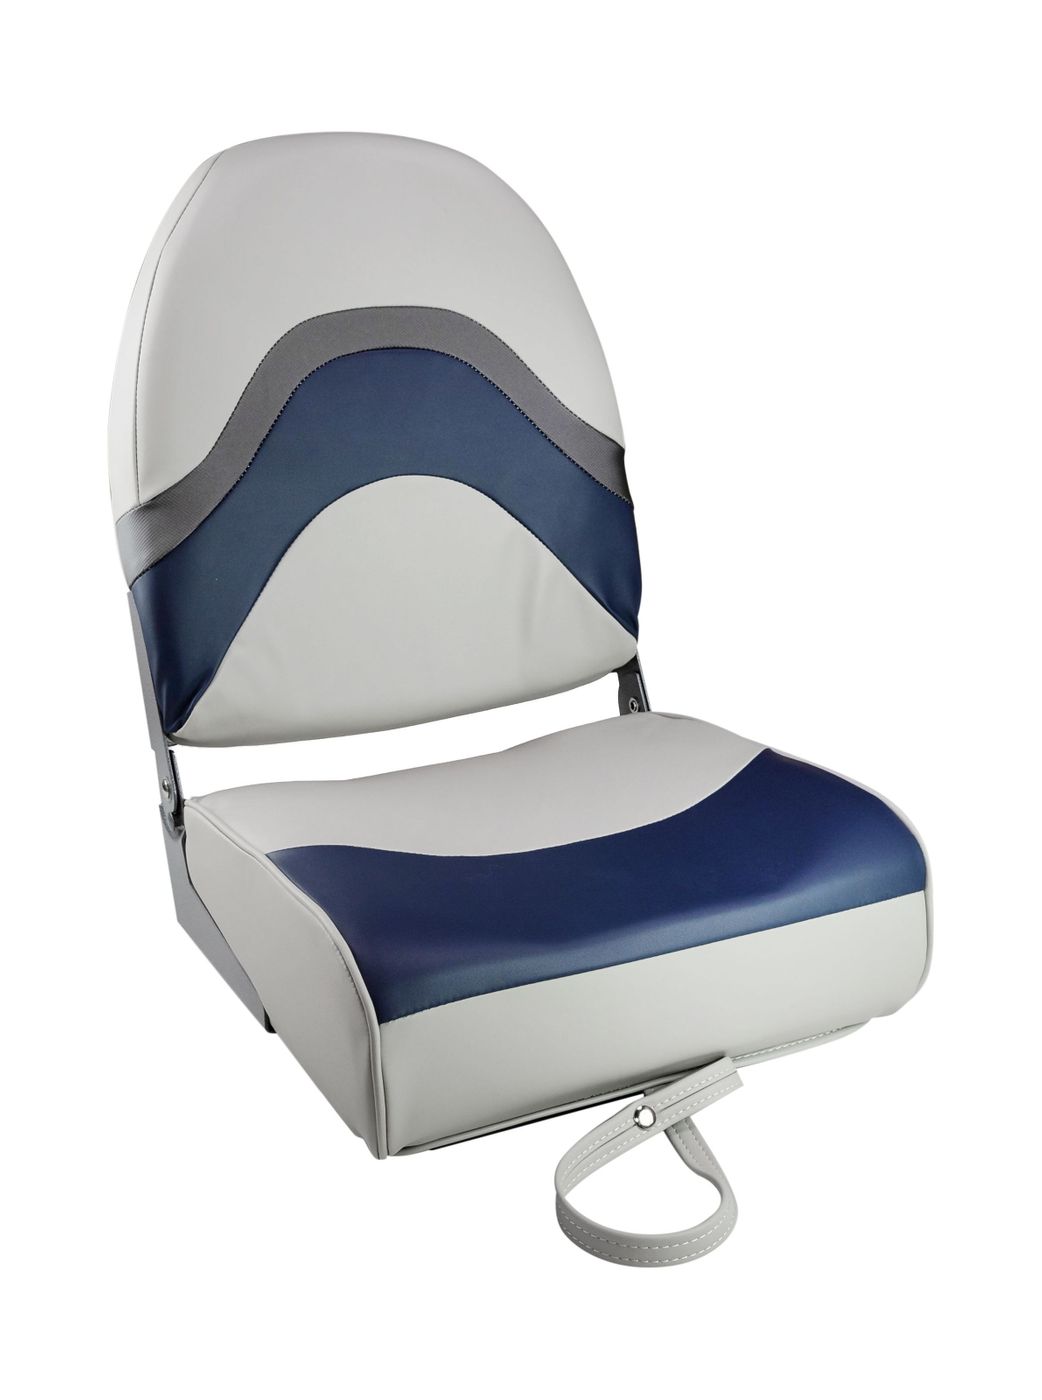 Кресло складное мягкое PREMIUM WAVE, цвет серый/синий 1062031 кресло складное мягкое skipper серый синий 1061019